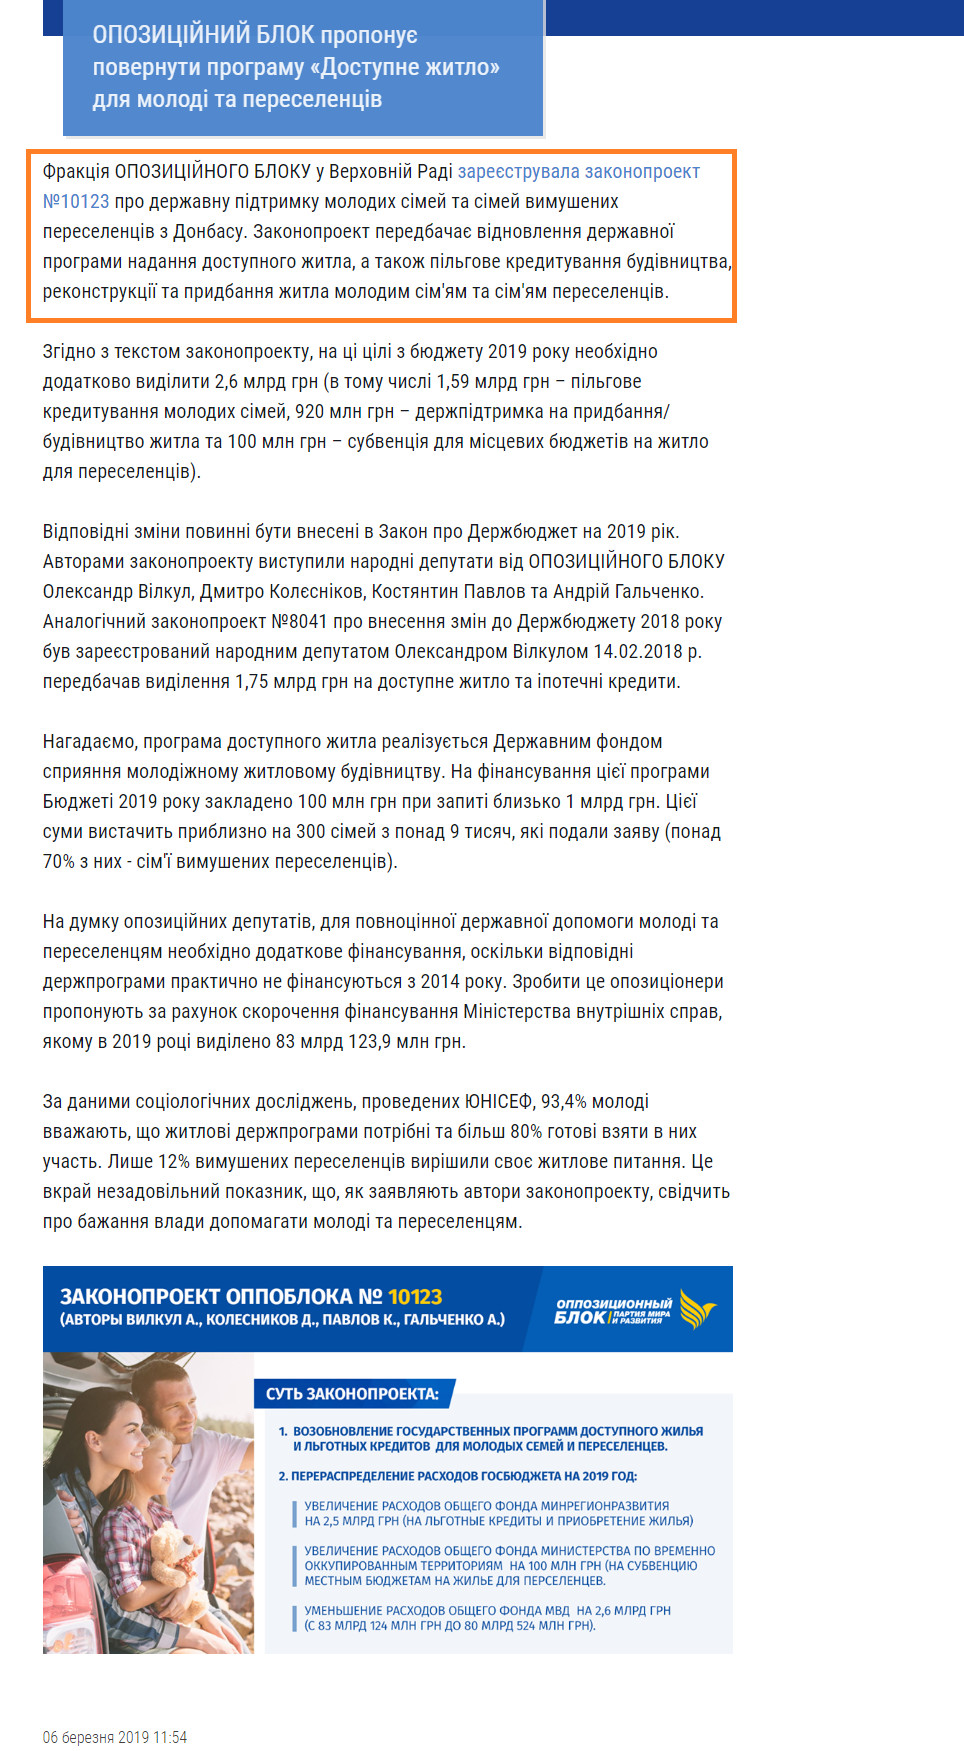 http://opposition.com.ua/ua/news/oppozytsyonn-y-blok-predlagaet-vernut-programmu-dostupnoe-zhyle-dlya-molodezhy-y-pereselentsev_968/